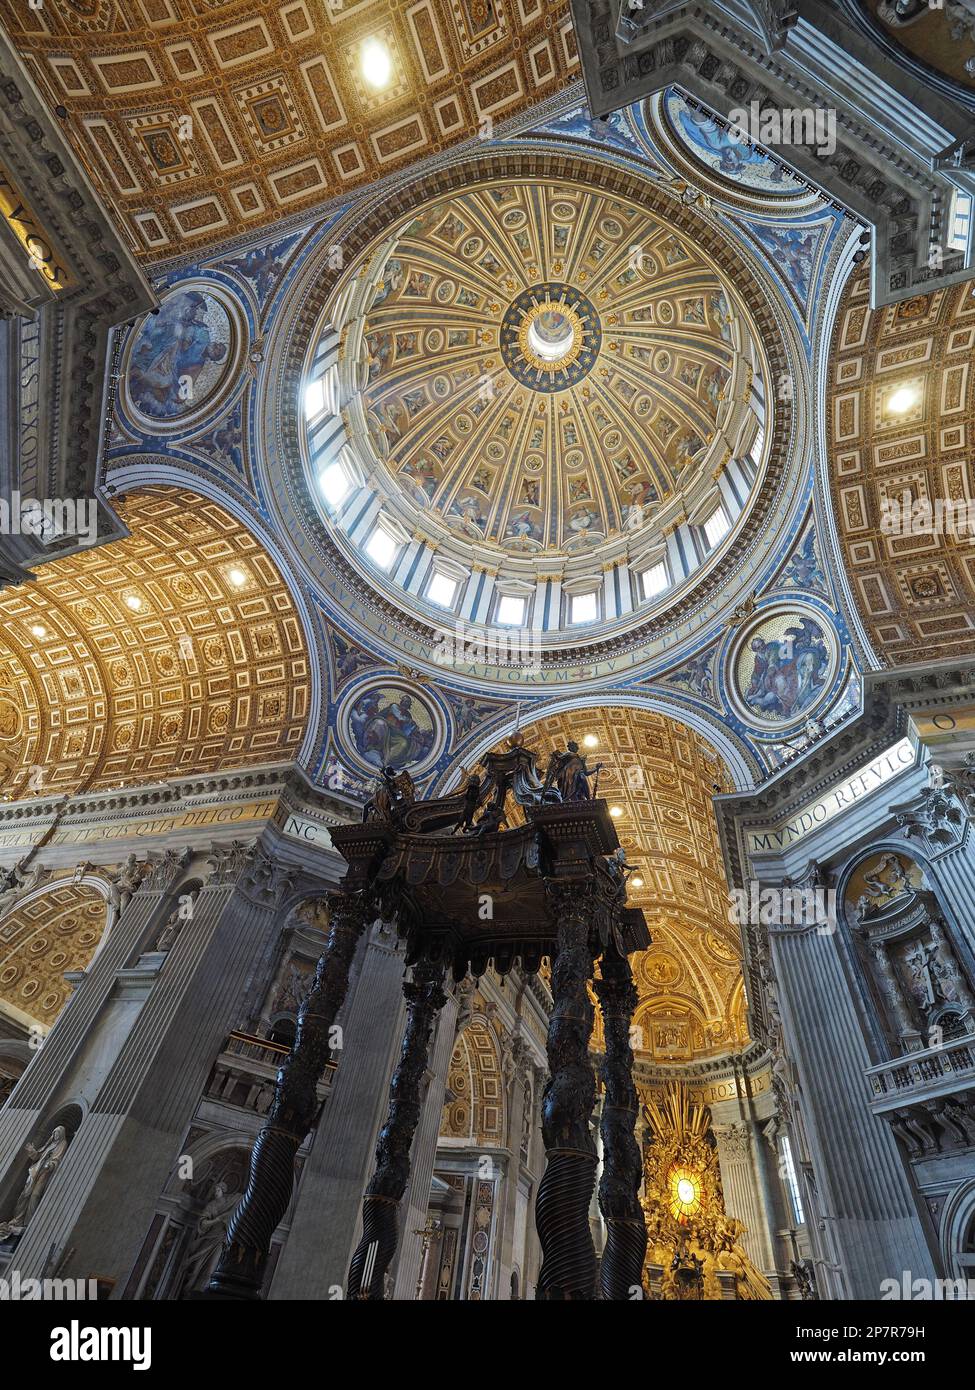 L'immense autel en bronze de la basilique Saint-Pierre du Vatican. C'est exactement au-dessus de l'endroit où Saint Pierre a été enterré. Banque D'Images